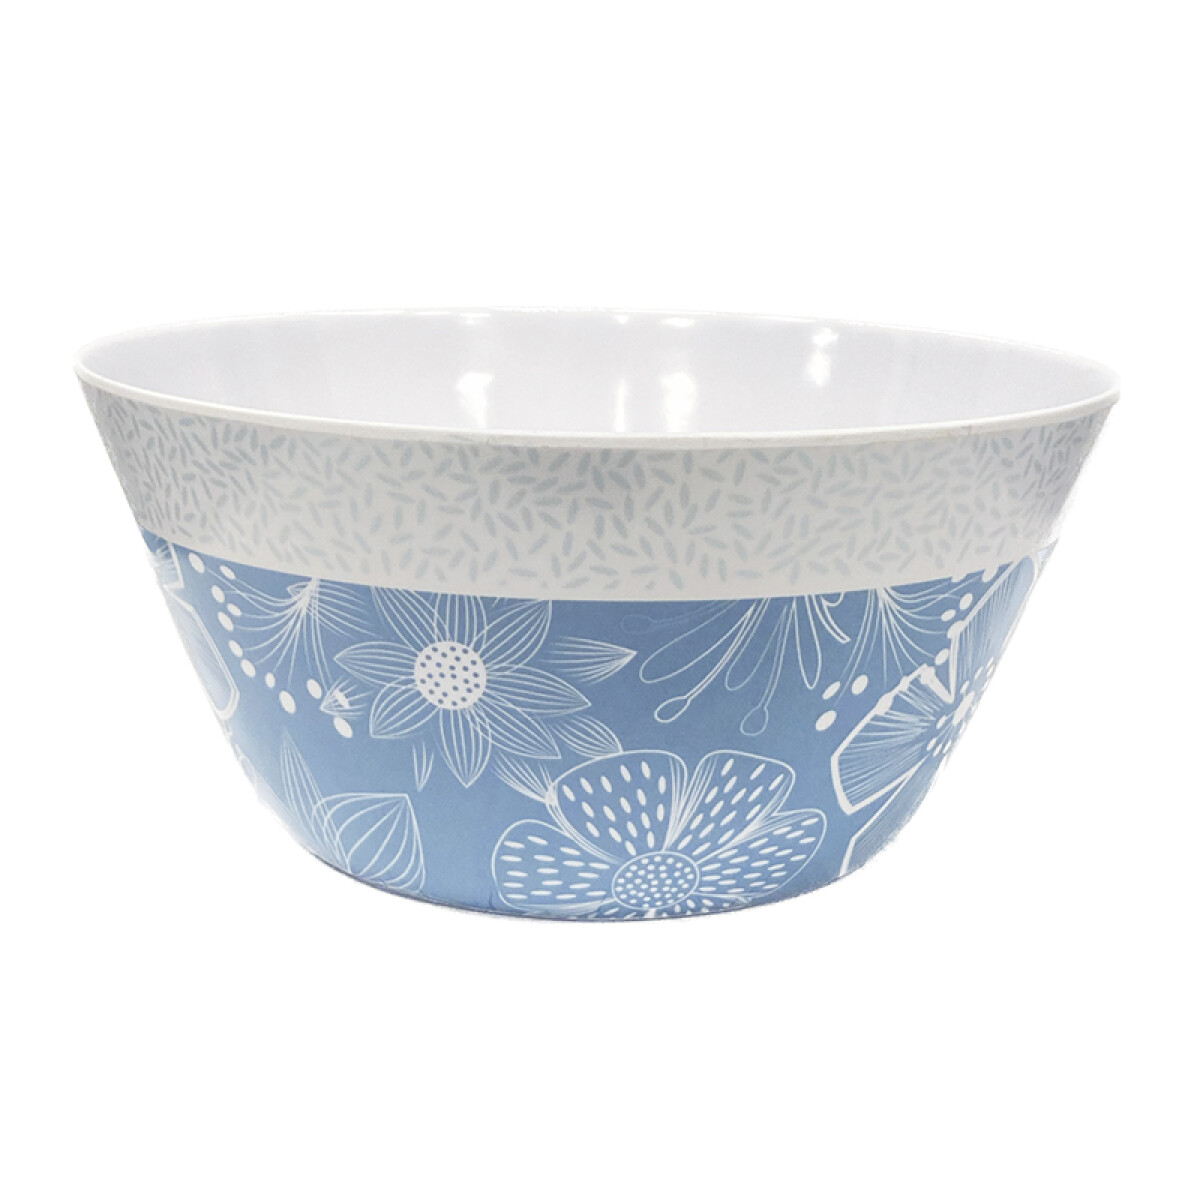 Bowl de Plástico Melamina 25,4 Cm - Flores Azules 